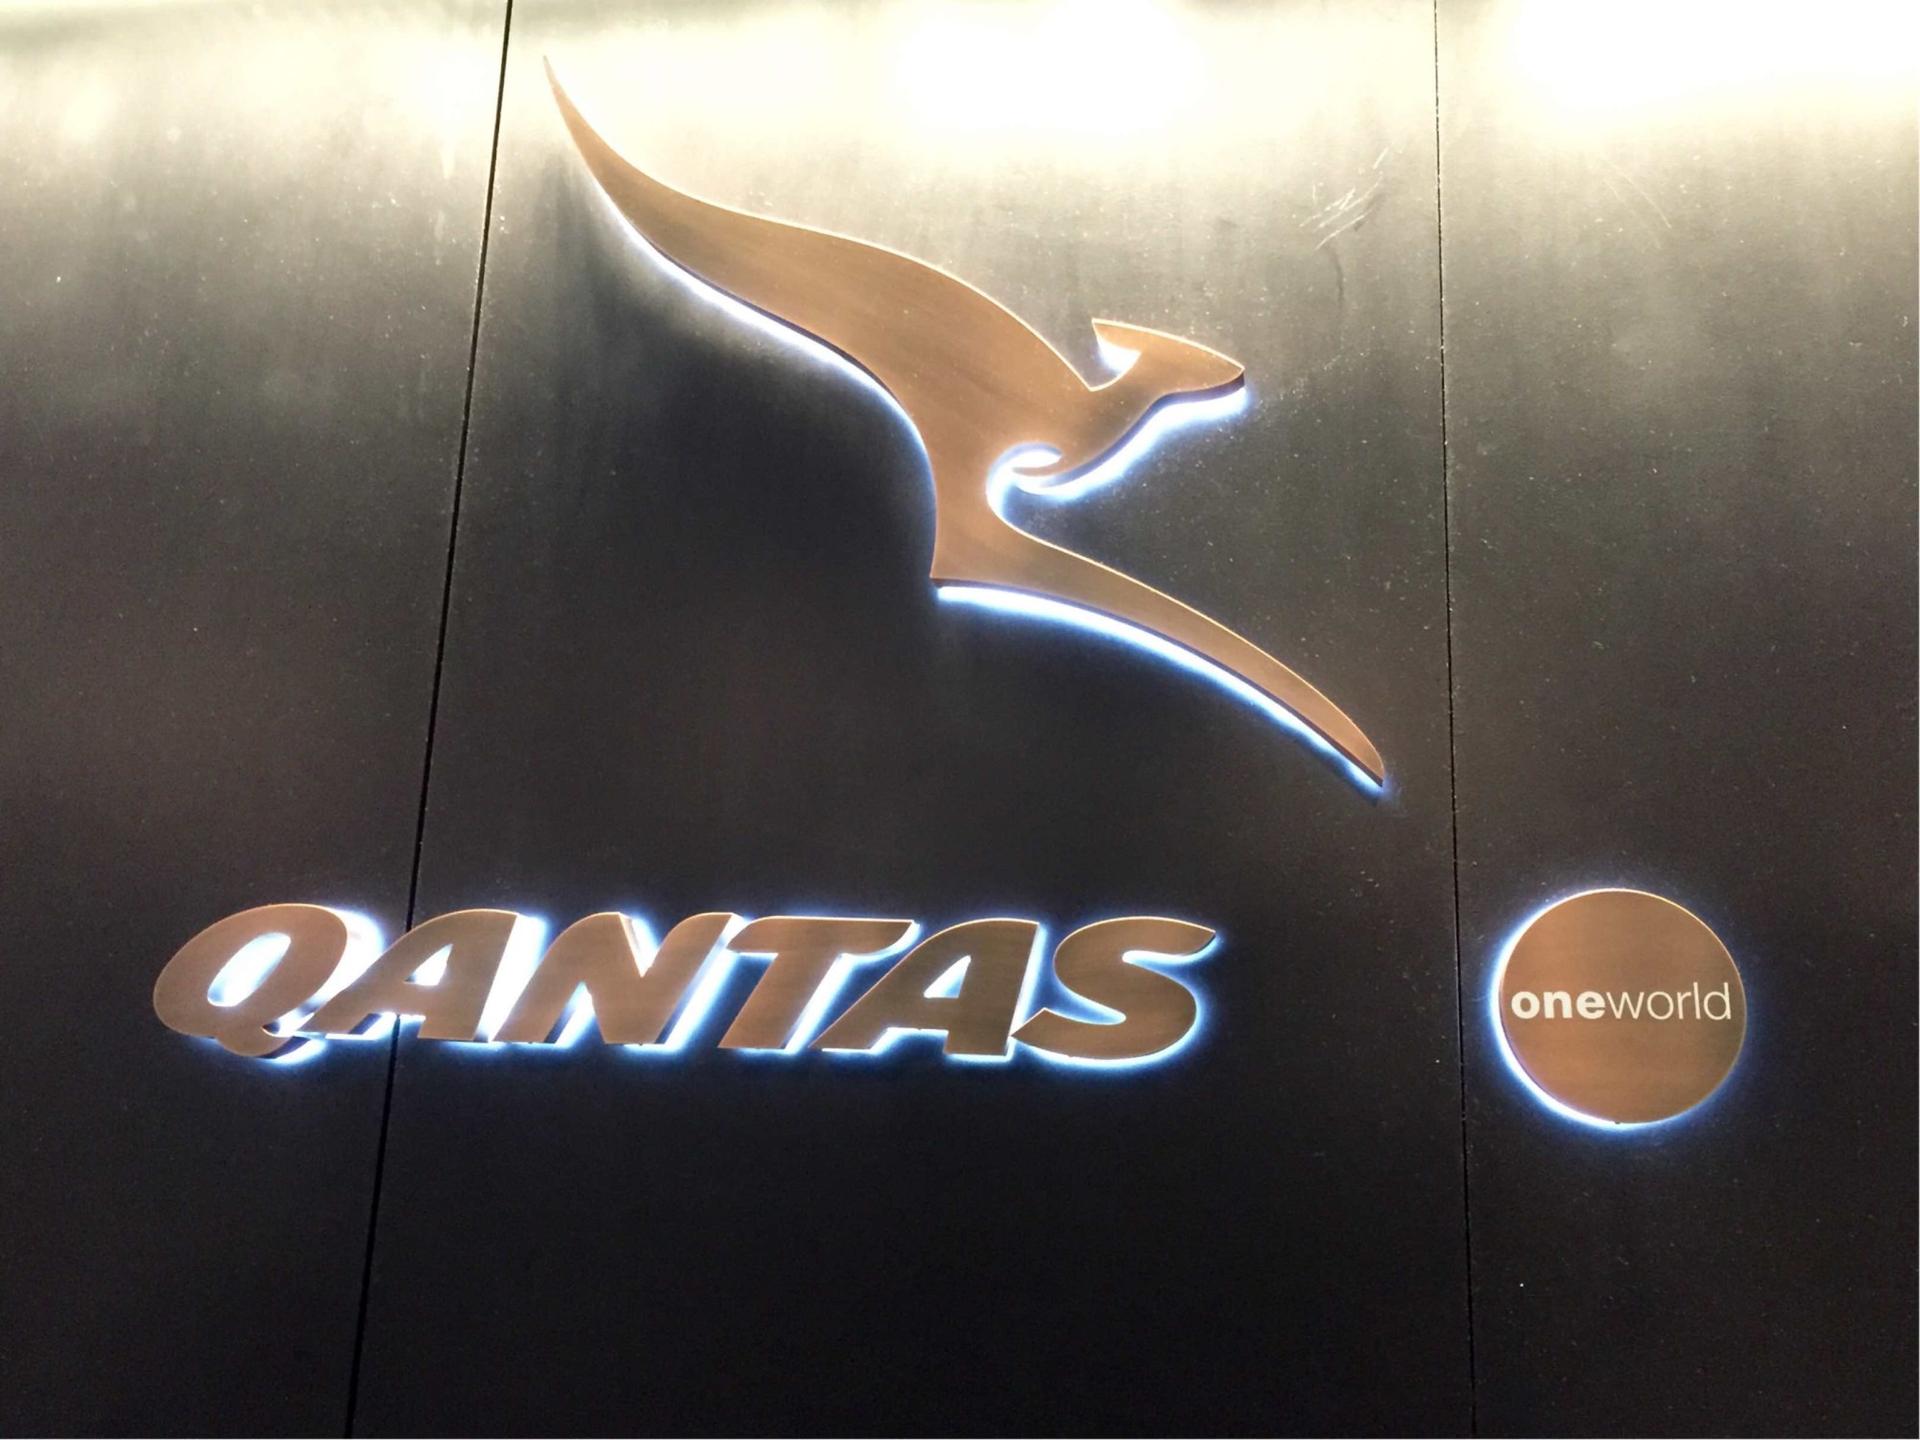 The Qantas Hong Kong Lounge image 50 of 99